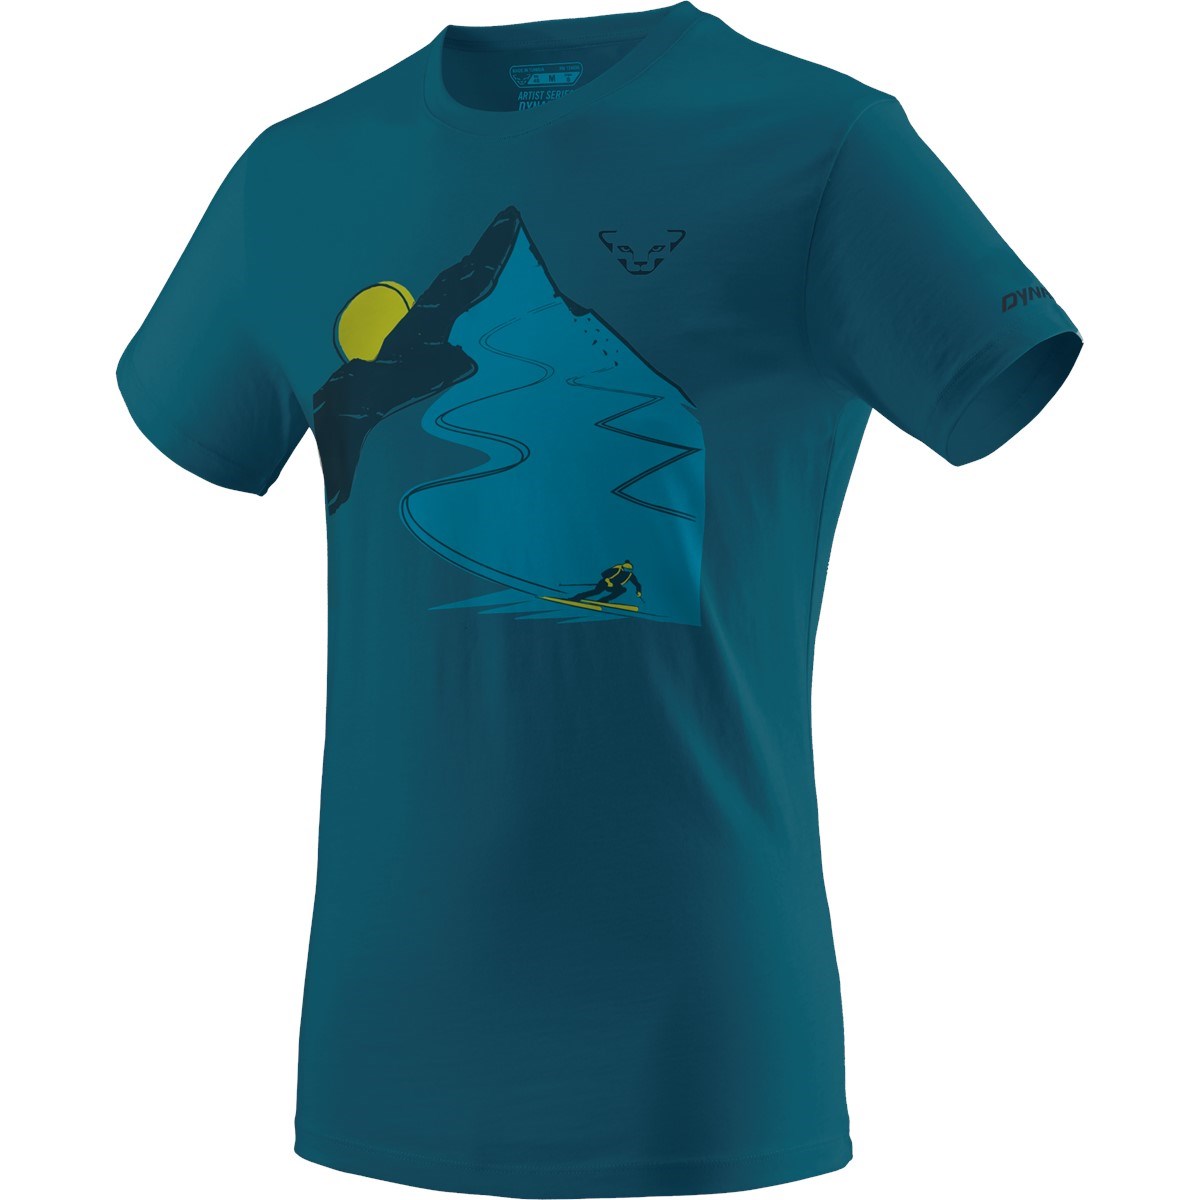 Triko Dynafit Artist Series Co T-shirt reef Dynafit 10024787 L-11